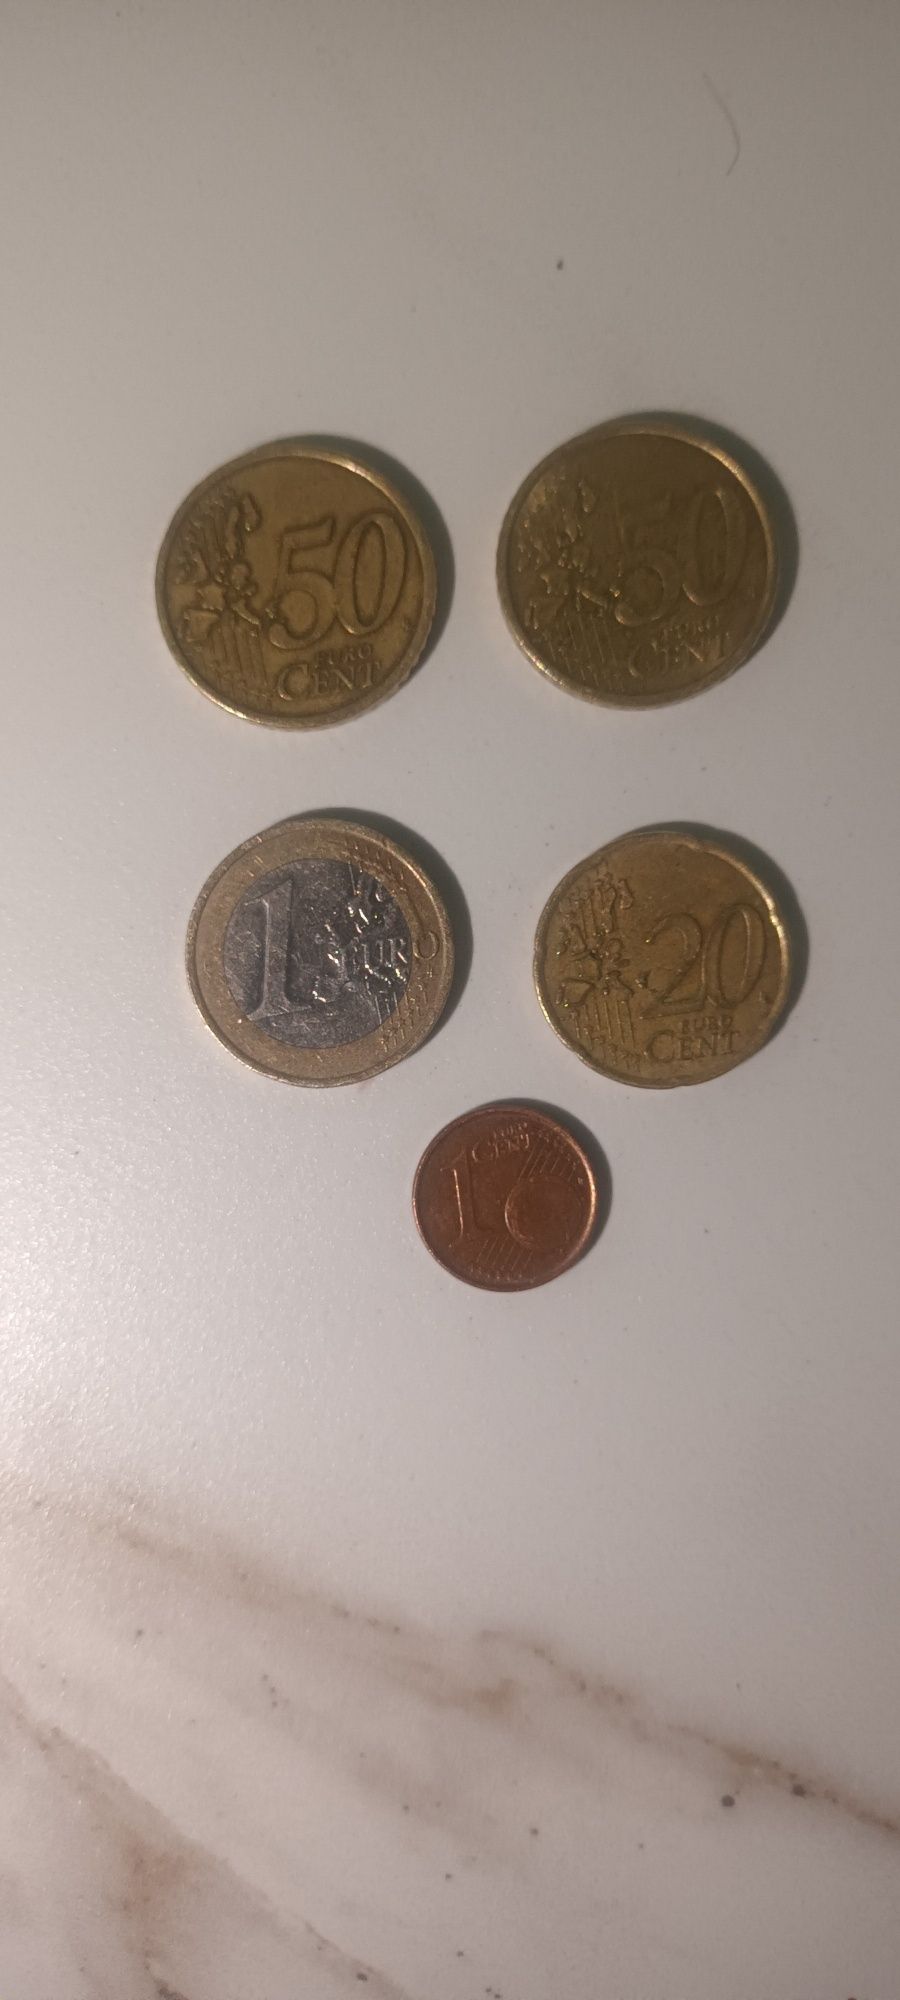 Vendo conjunto de moedas raras